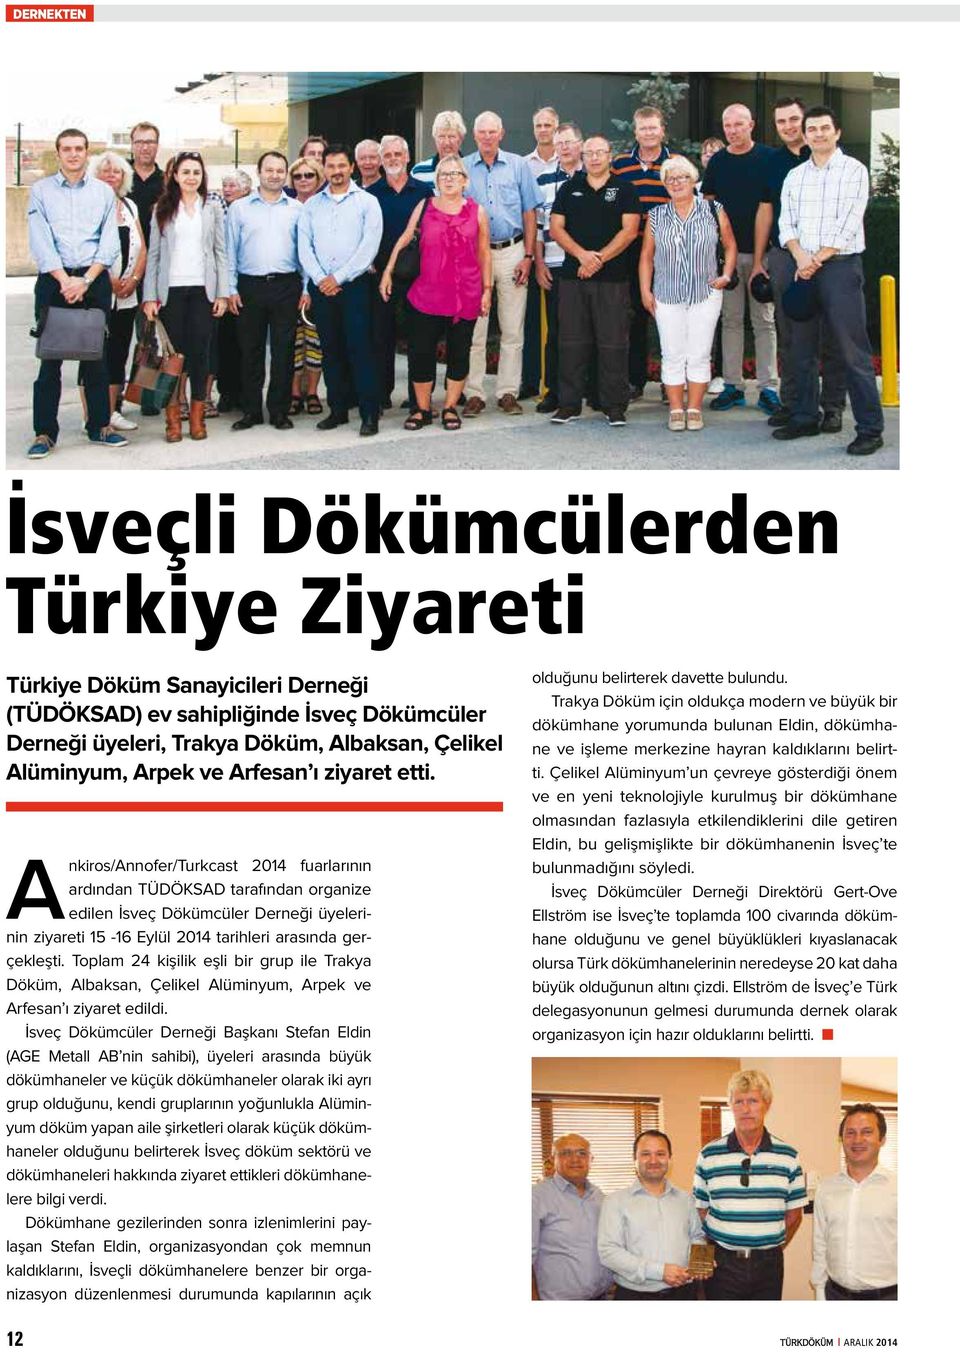 Ankiros/Annofer/Turkcast 2014 fuarlarının ardından TÜDÖKSAD tarafından organize edilen İsveç Dökümcüler Derneği üyelerinin ziyareti 15-16 Eylül 2014 tarihleri arasında gerçekleşti.